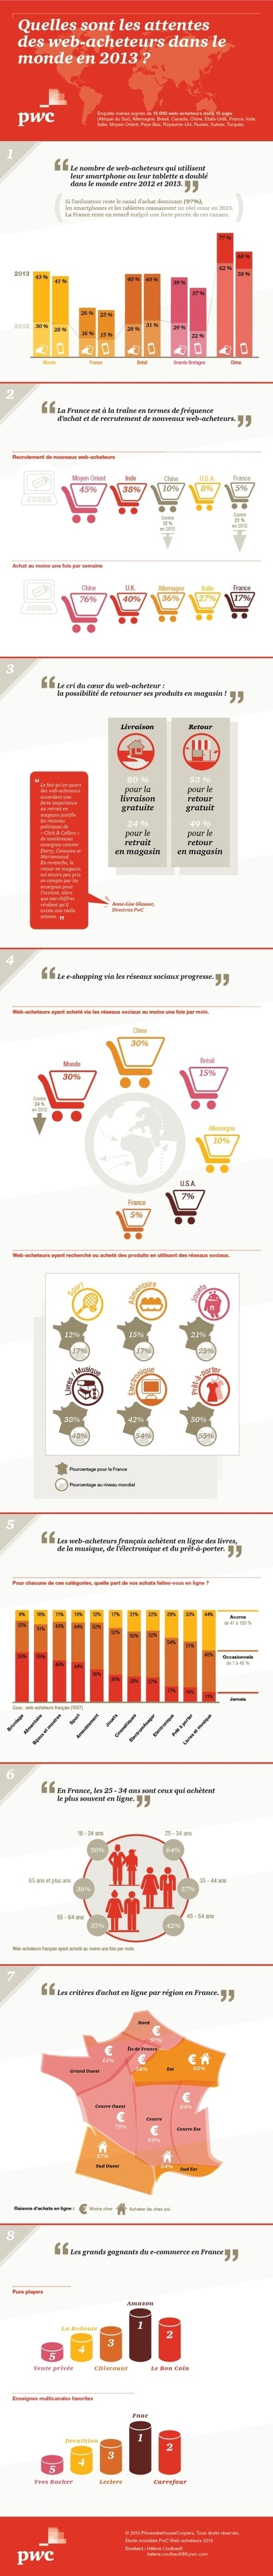 Infographie : Les comportements d'achat en ligne dans le monde | A New Society, a new education! | Scoop.it